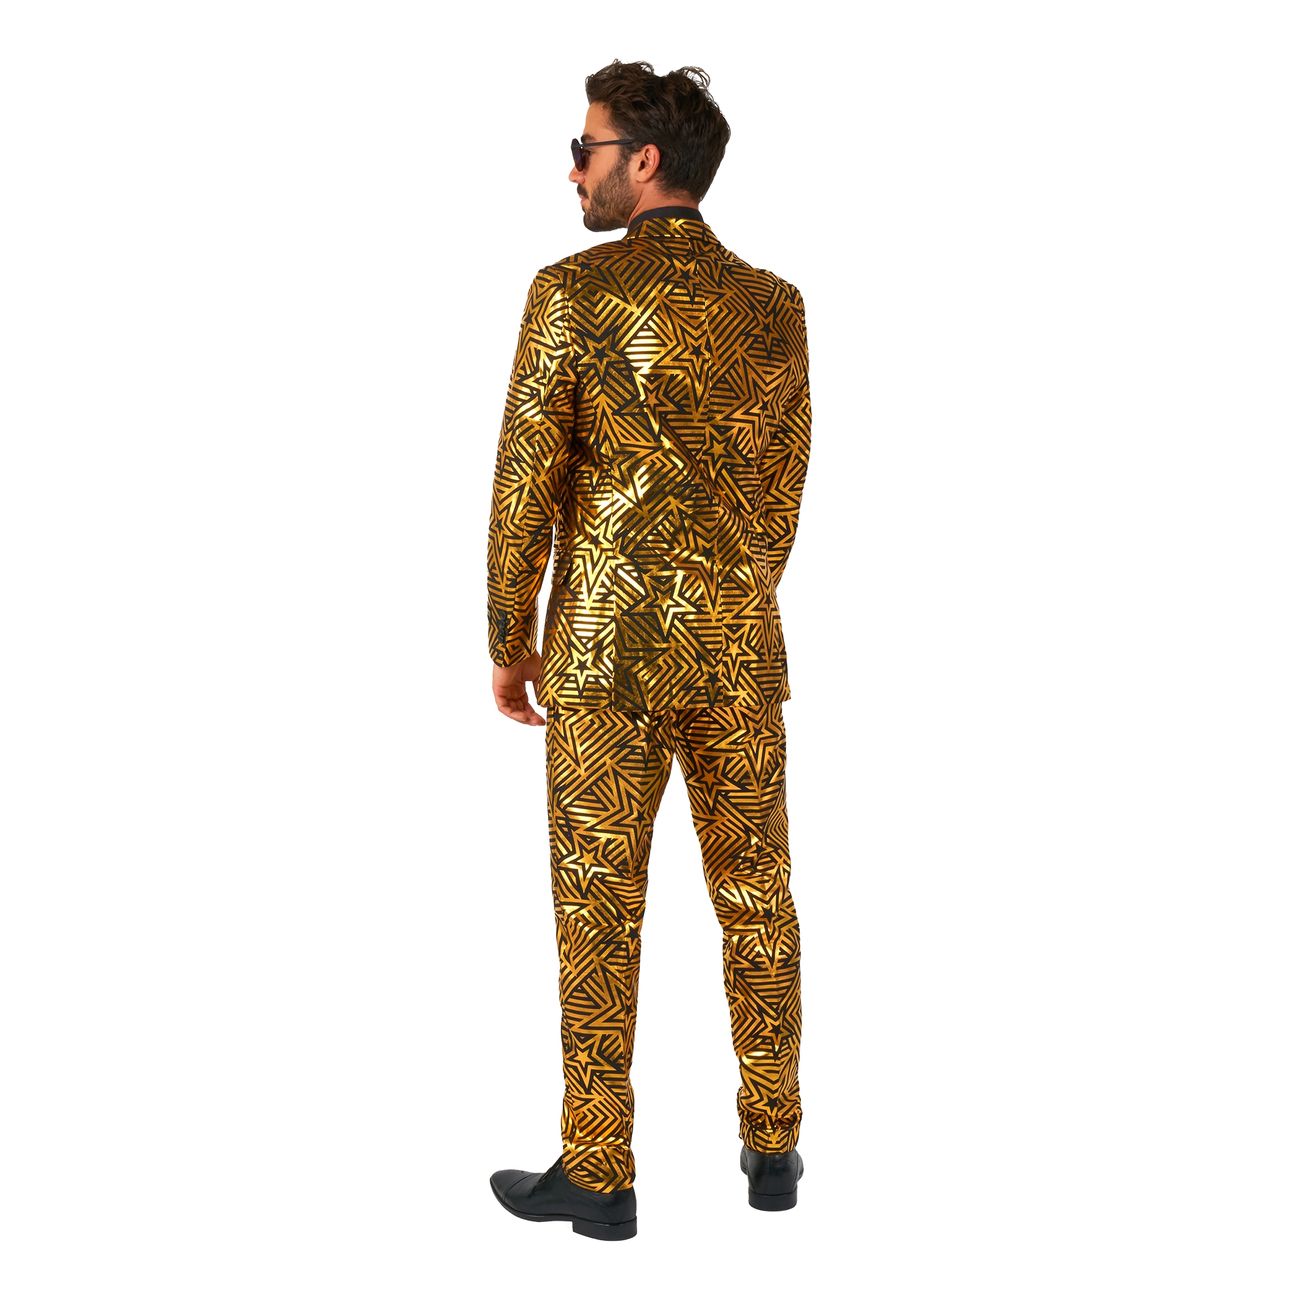 opposuits-golden-geo-star-kostym-100045-5